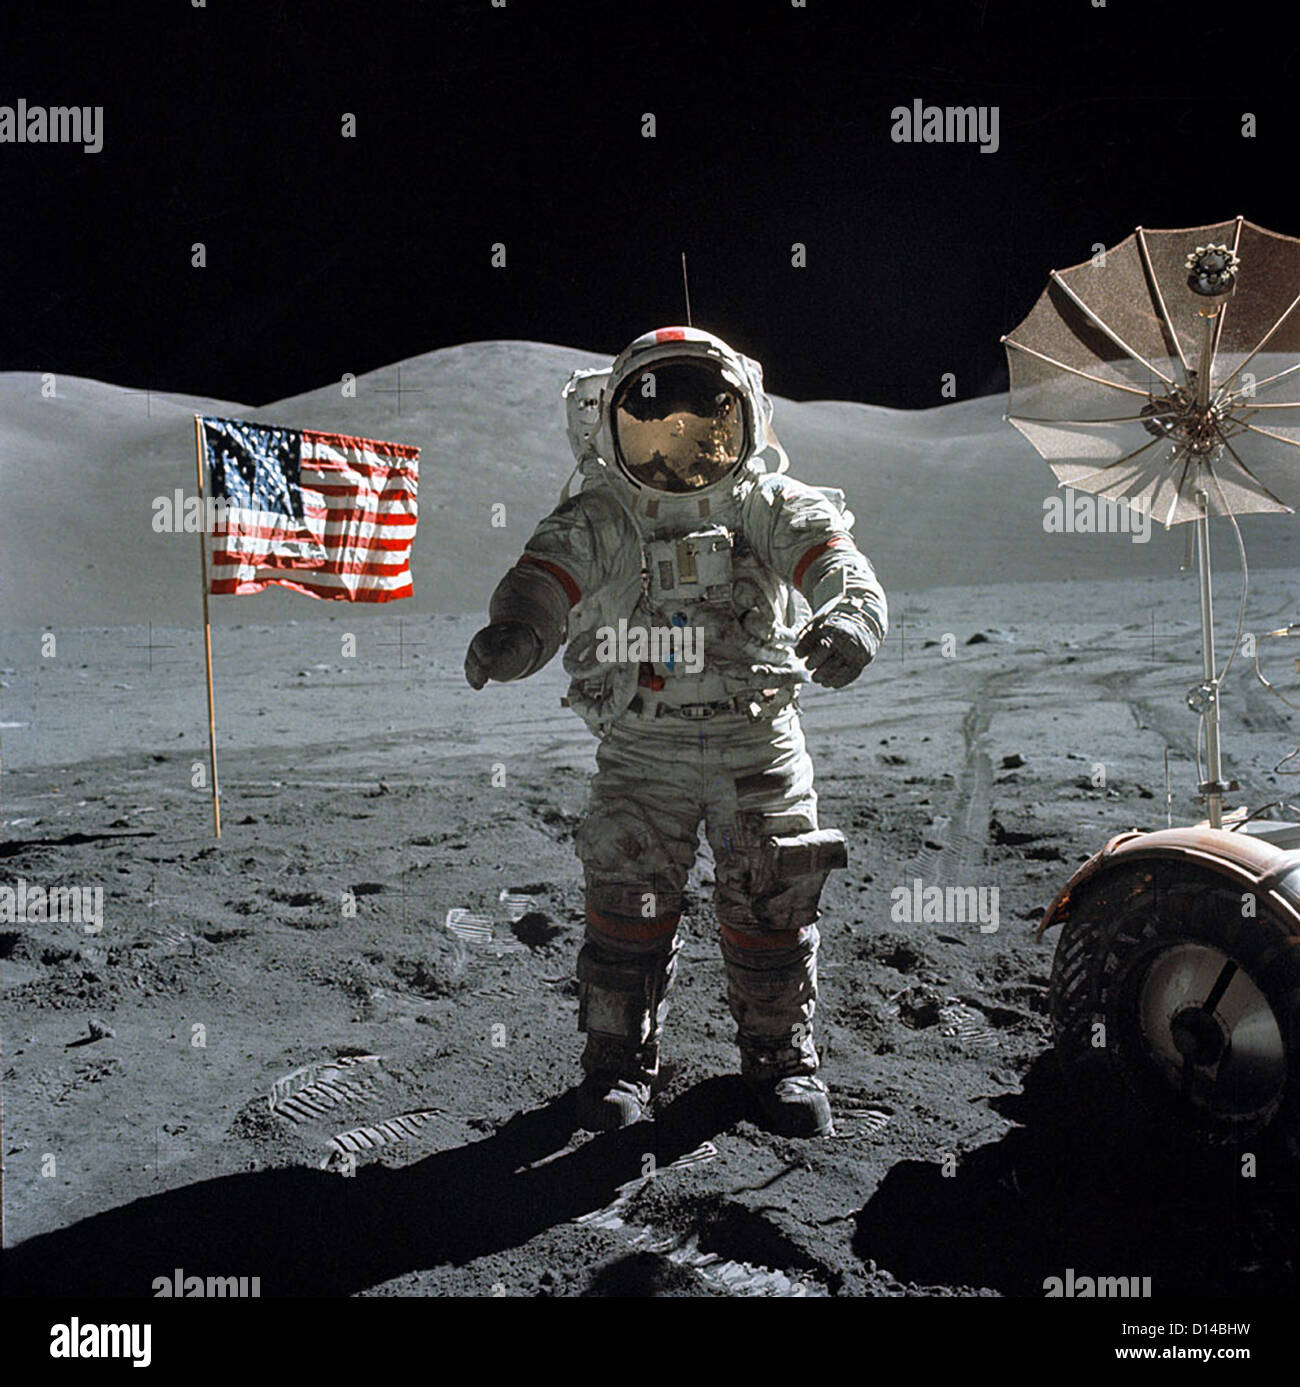 Astronauta Cernan Gene, Apollo 17 commander, sulla superficie lunare durante attività extravehicular (EVA) di finale della NASA atterraggio lunare missione nella serie Apollo 13 dicembre 1972. L'equipaggio ha speso 12,5 giorni nello spazio, tra cui tre giorni sulla superficie lunare e l' ultima volta uomo mettere piede sulla luna. Foto Stock